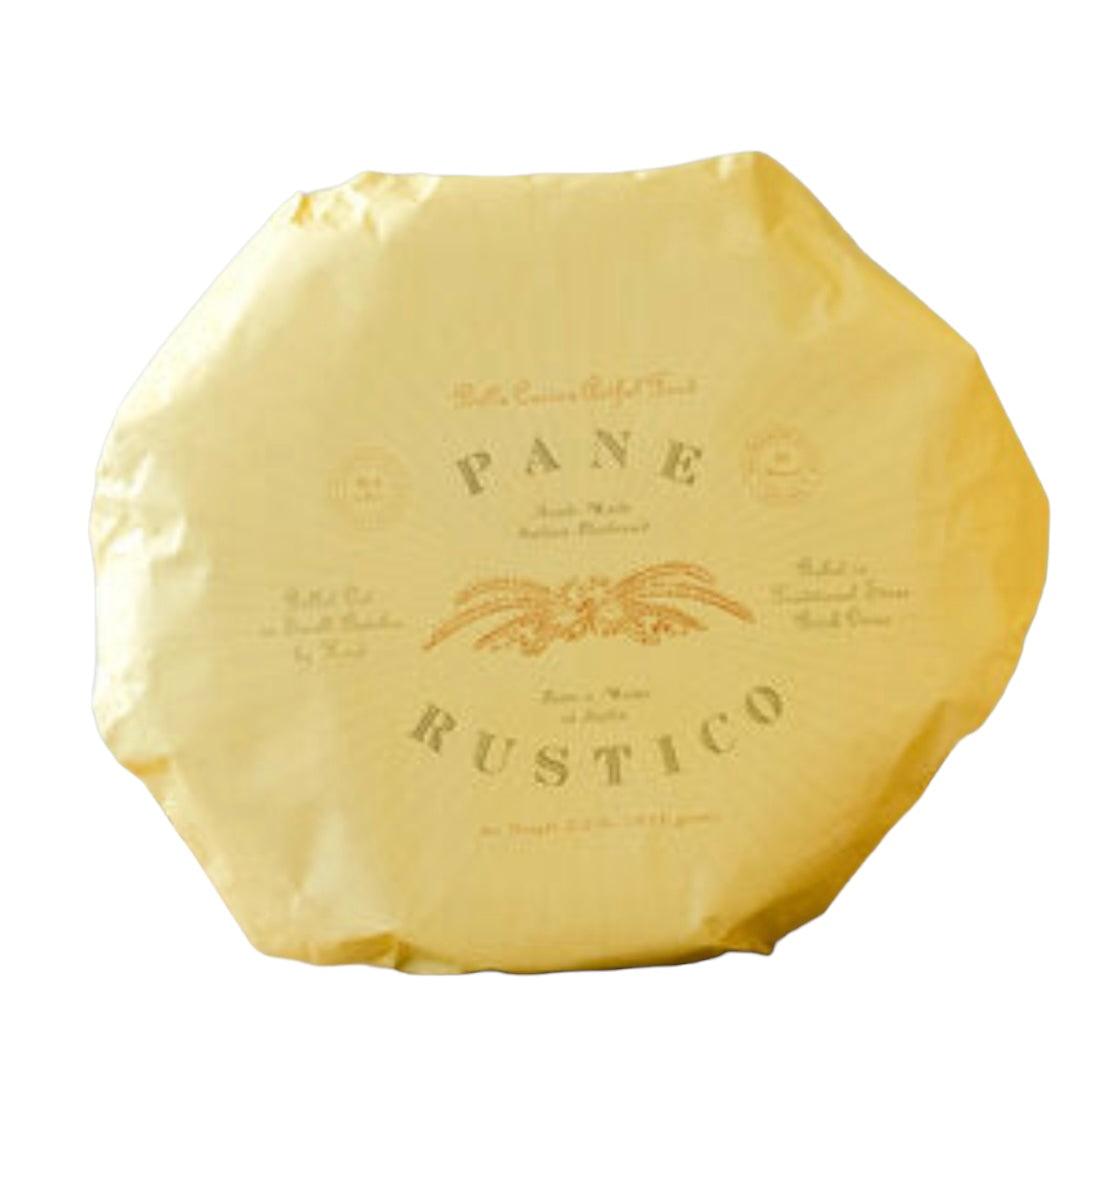 Pane Rustico Flatbread - The White Barn Antiques